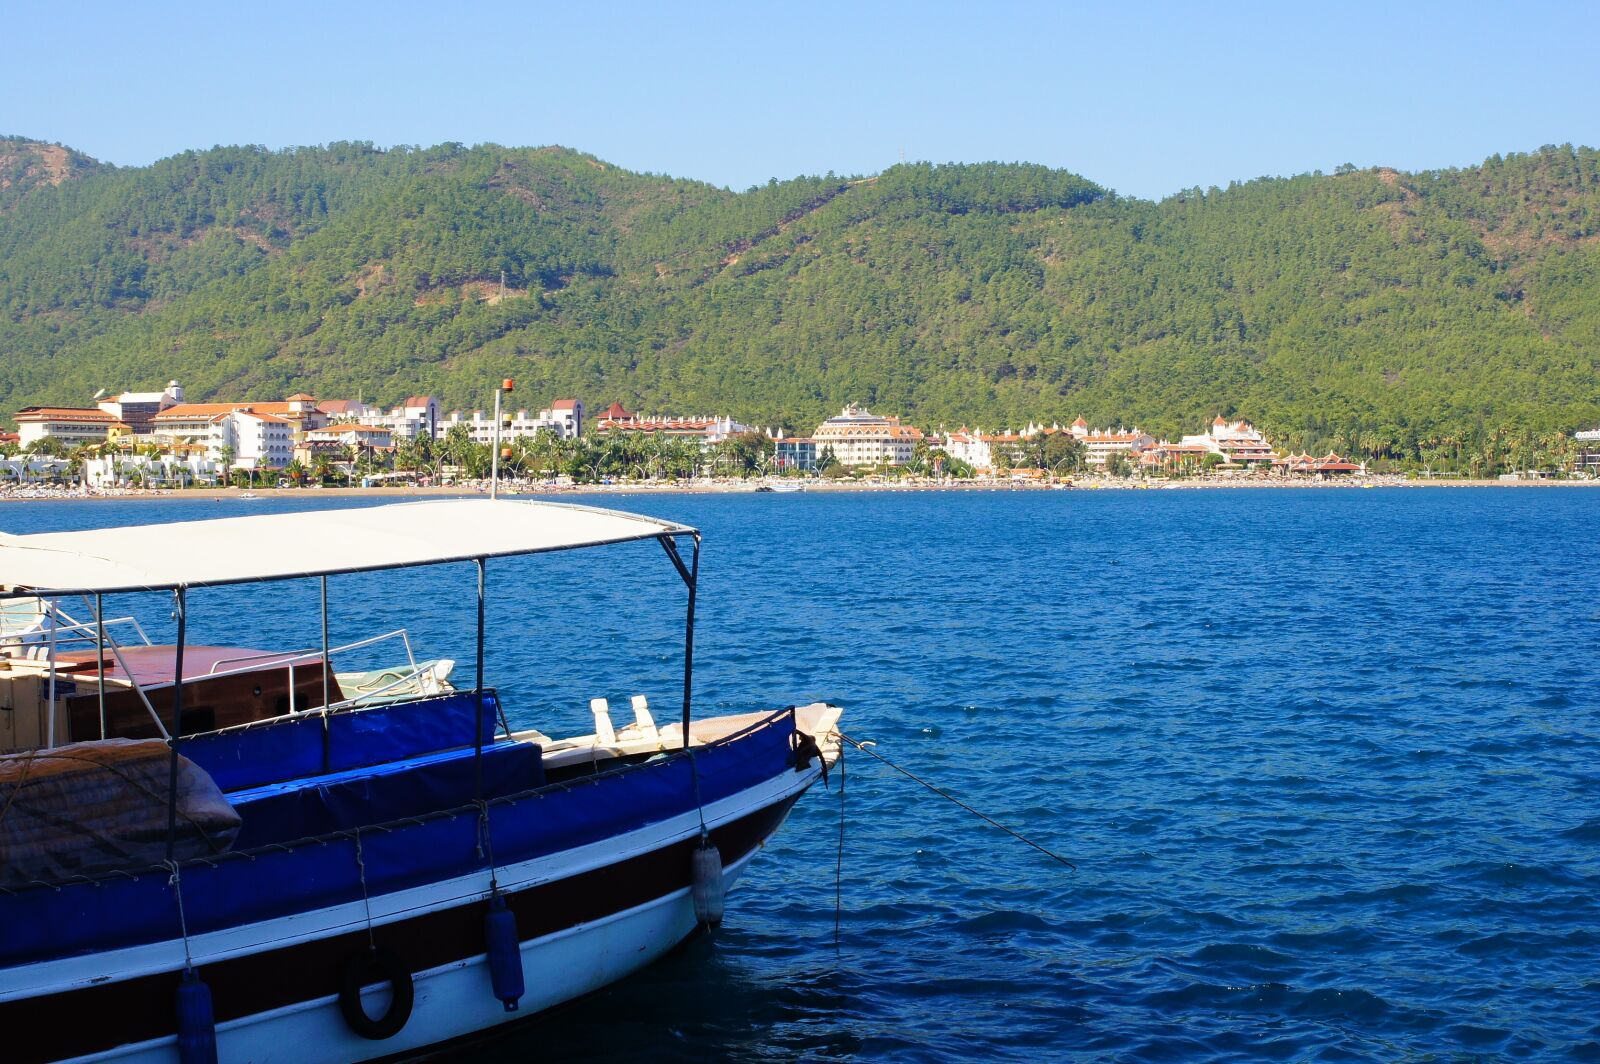 Sony SLT-A33 sample photo. Turkey, boat, sea photography